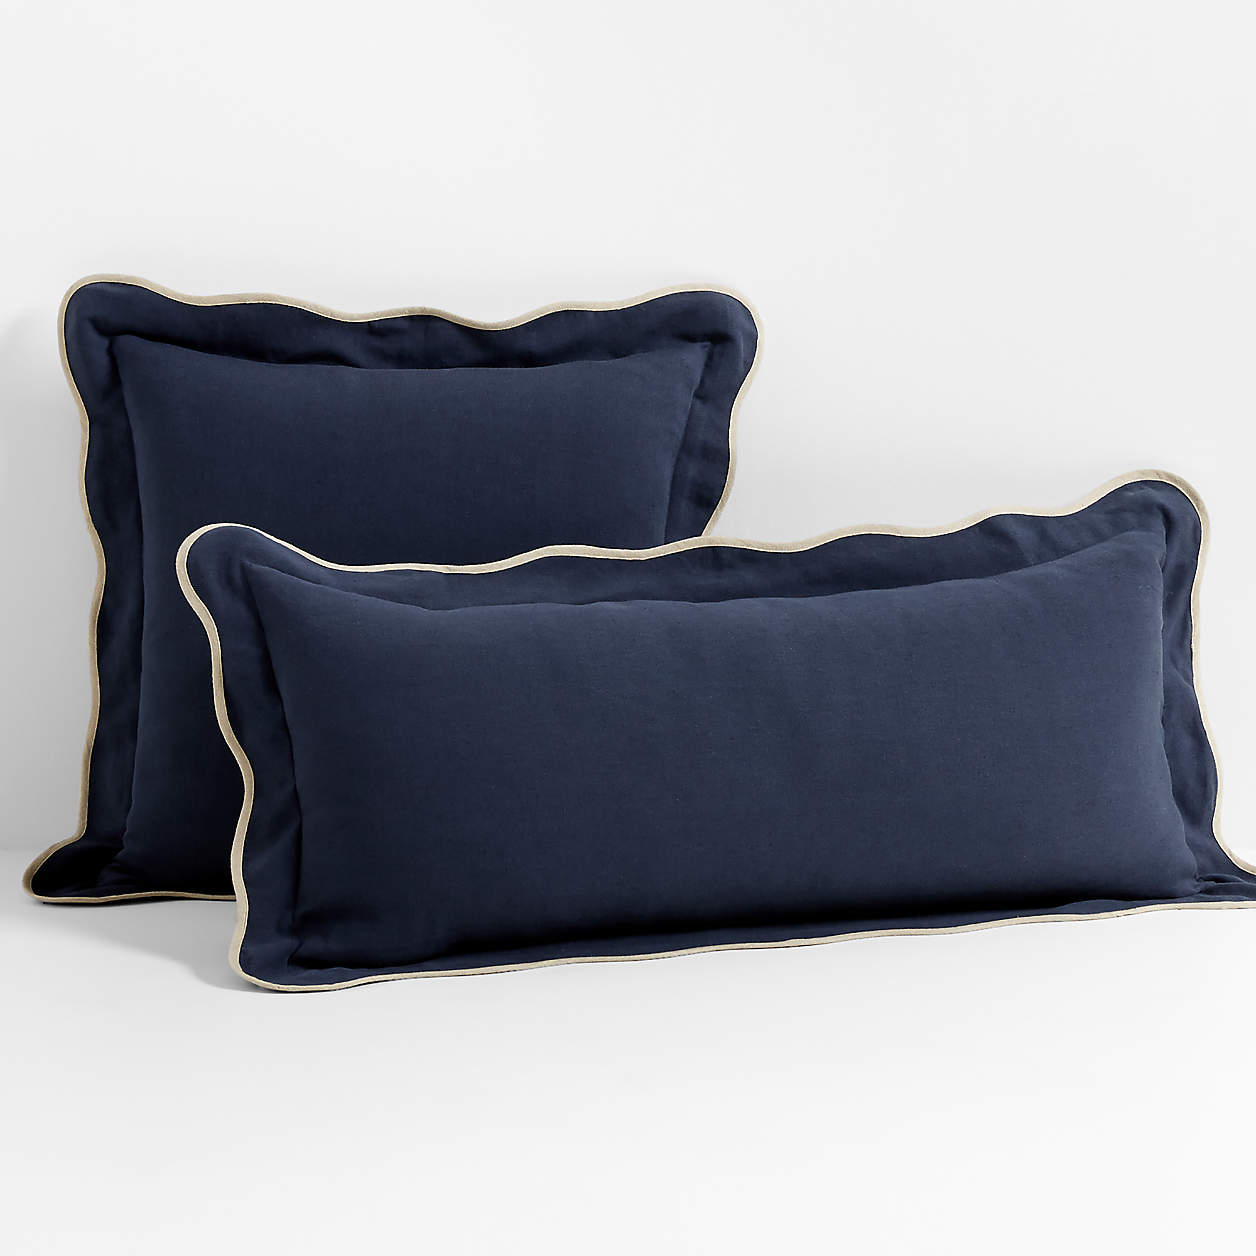 Amalfi Cotton Linen Scallop Edge 23''x23" Deep Indigo Blue Throw Pillow Cover